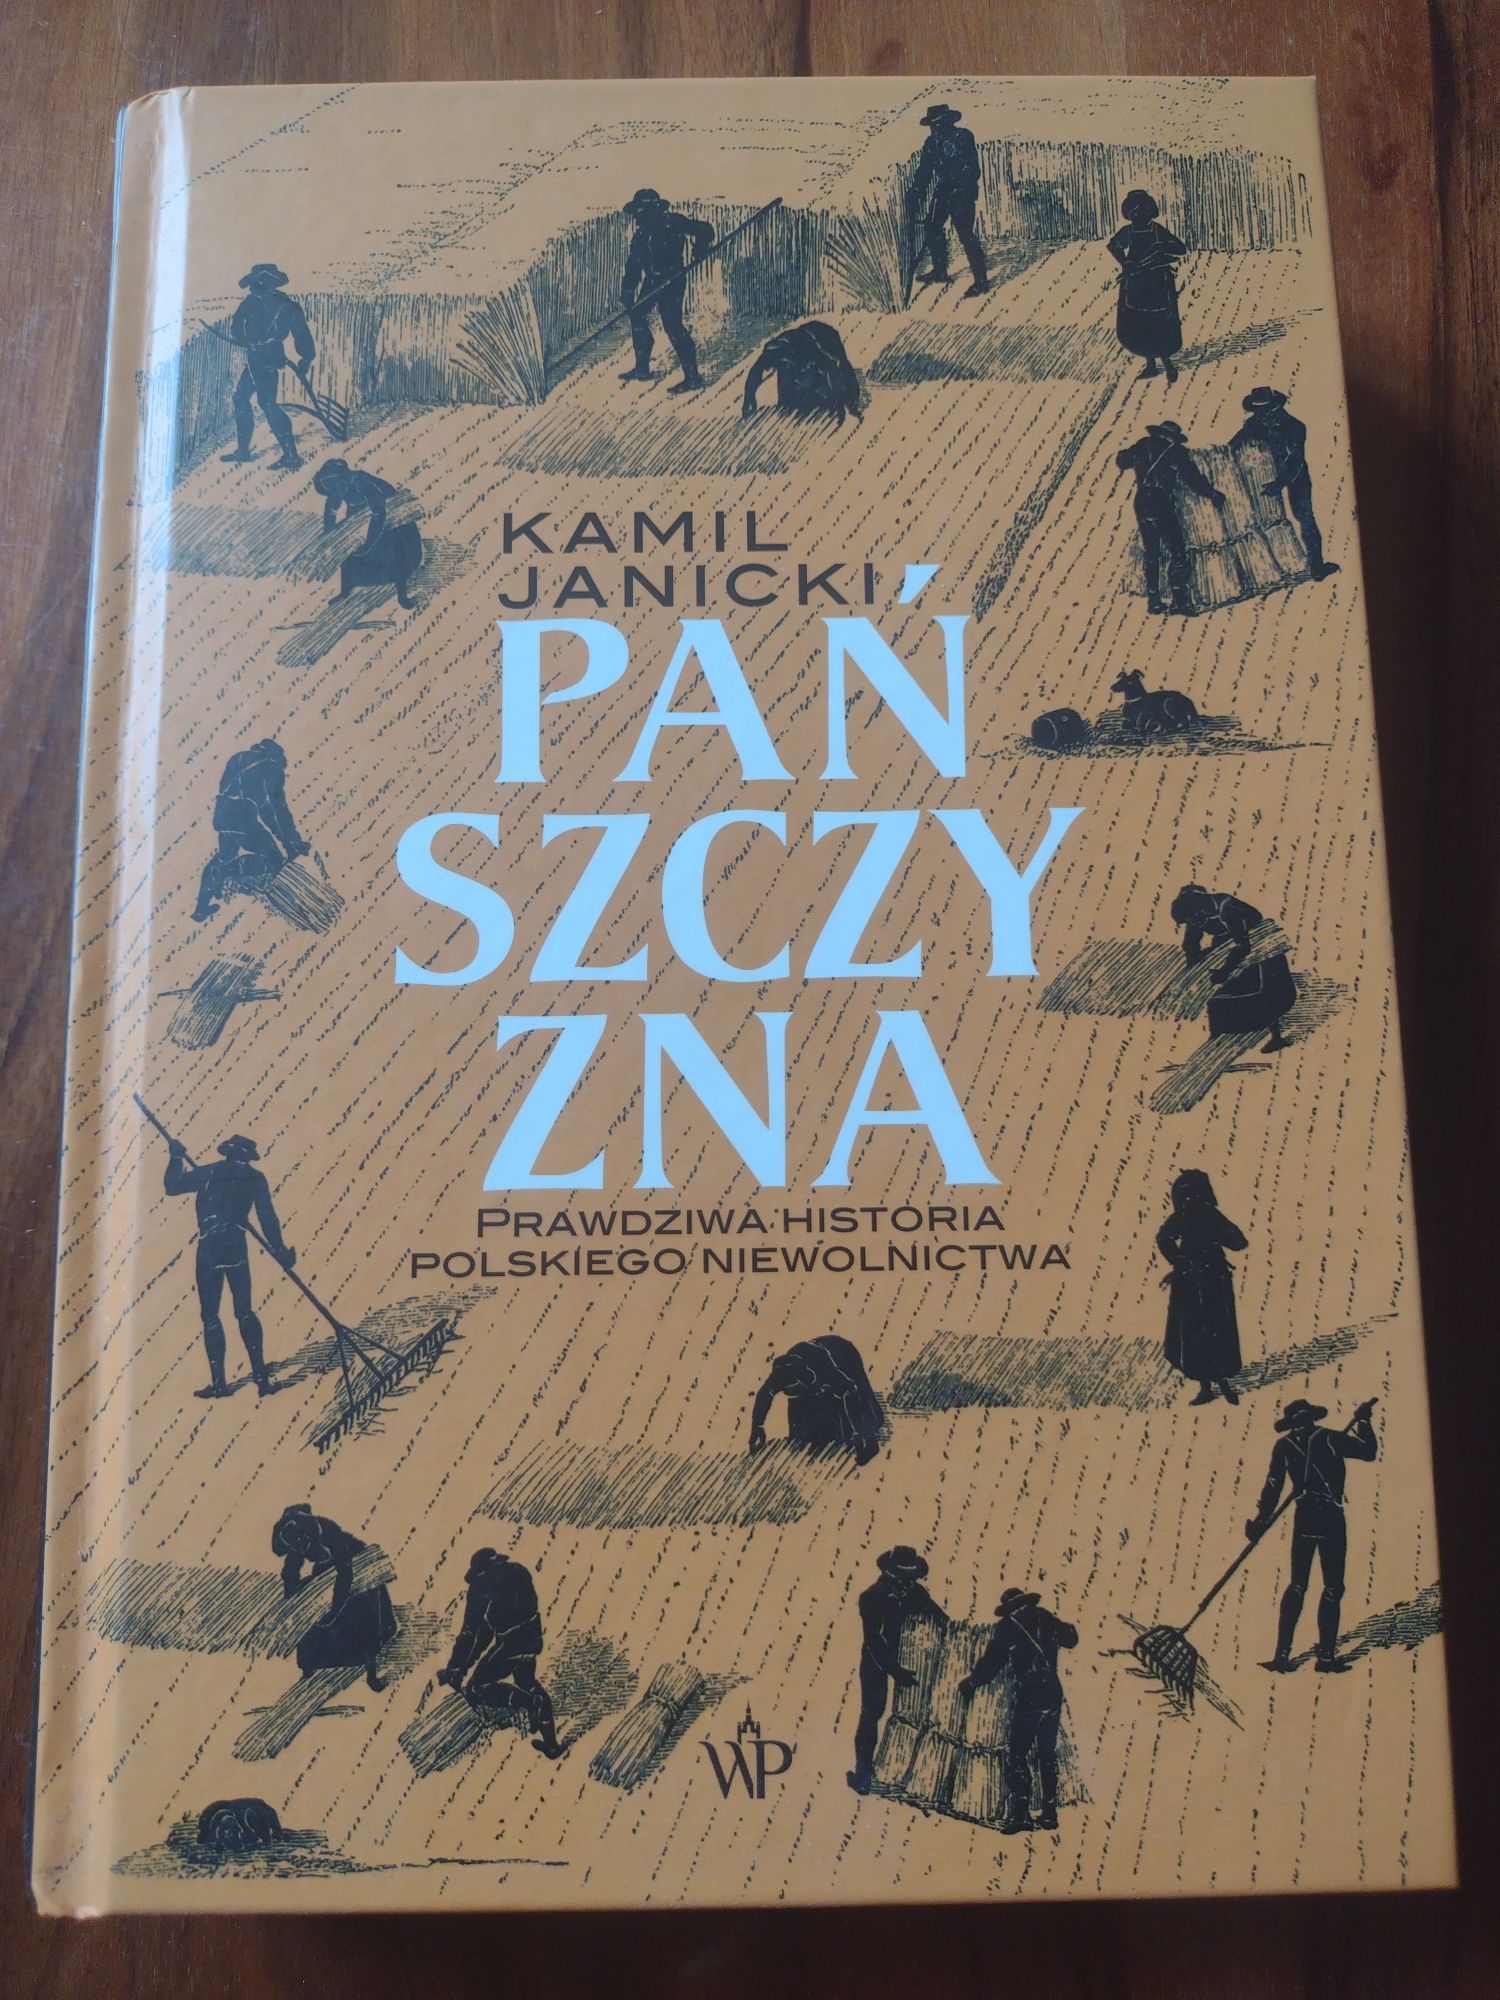 Kamil Janicki, Pańszczyzna. Prawdziwa historia polskiego niewolnictwa